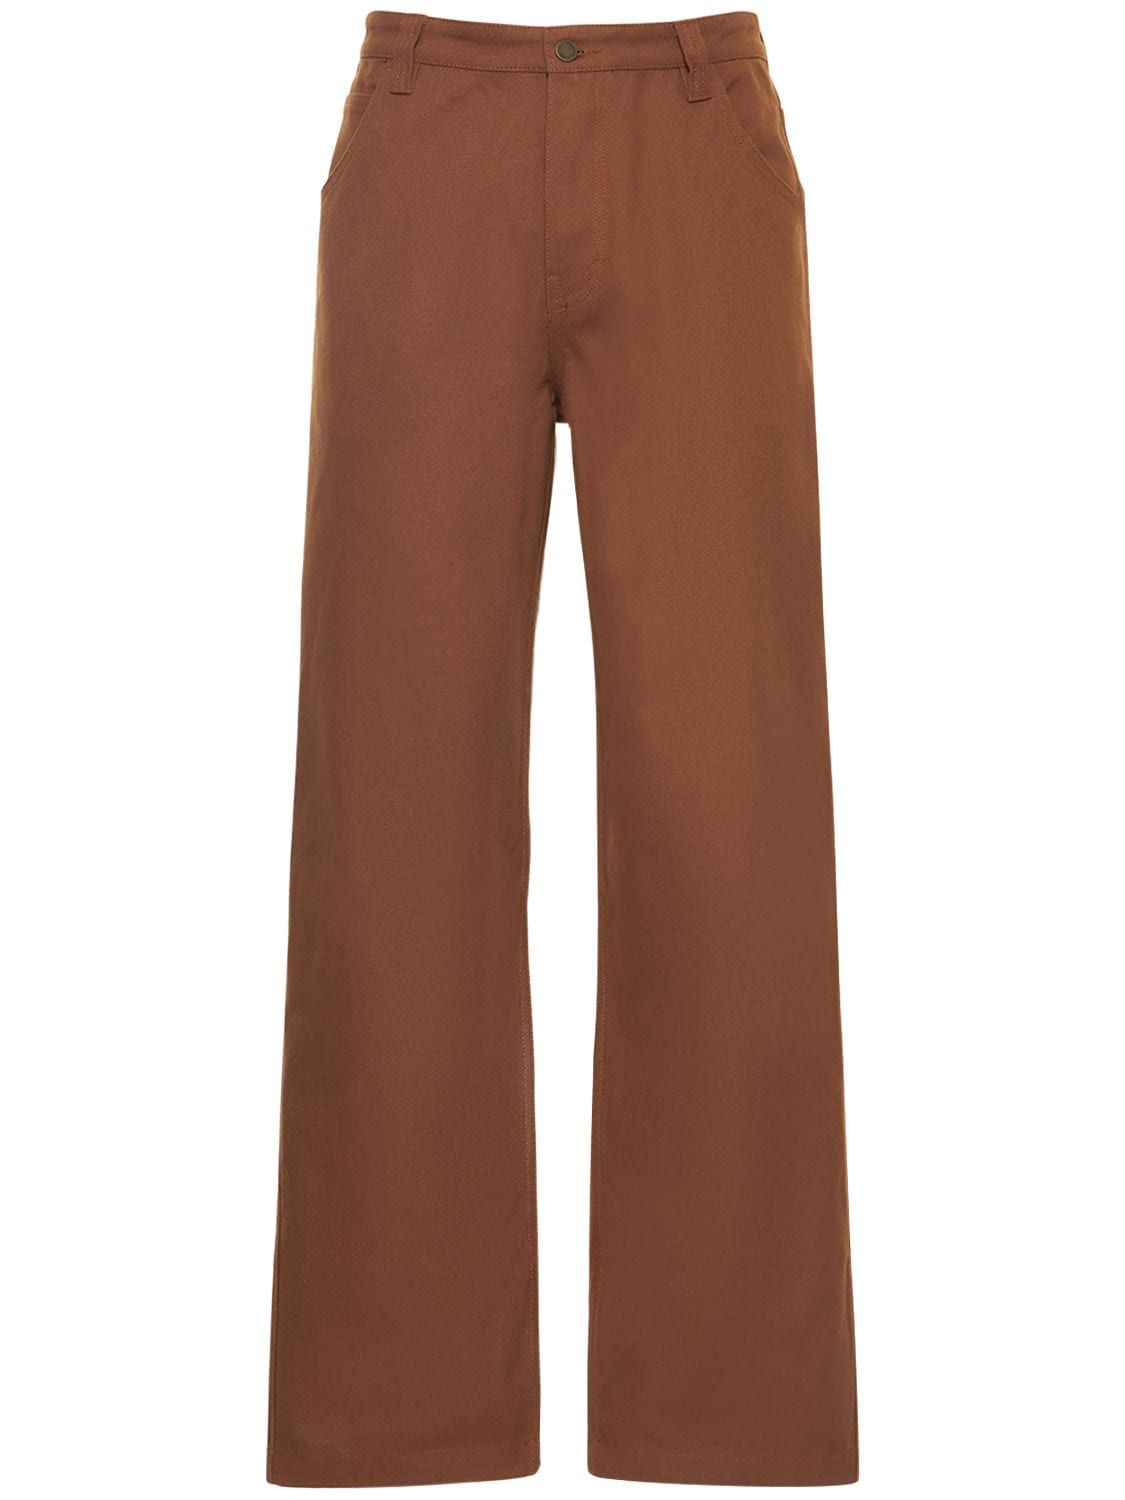 Pantalon En Sergé De Coton Fairfax - HONOR THE GIFT - Modalova